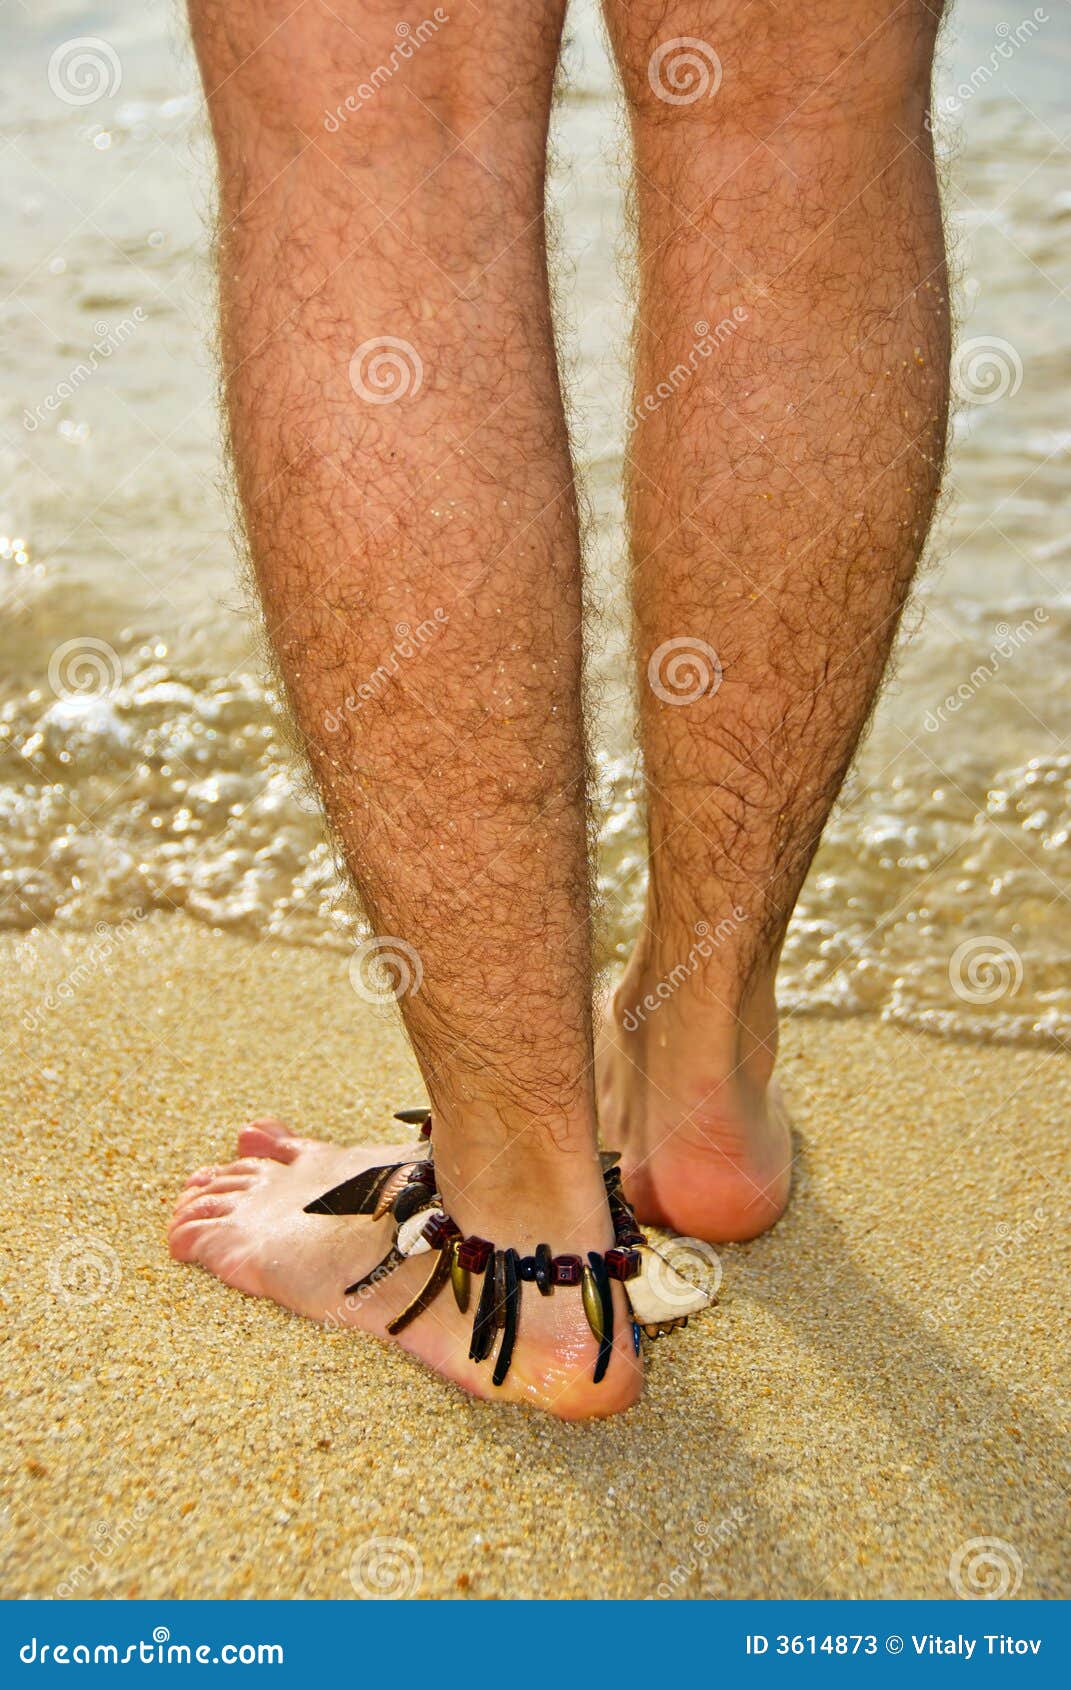 Сонник нога мужчины. Красивые женщины с волосатыми ногами.